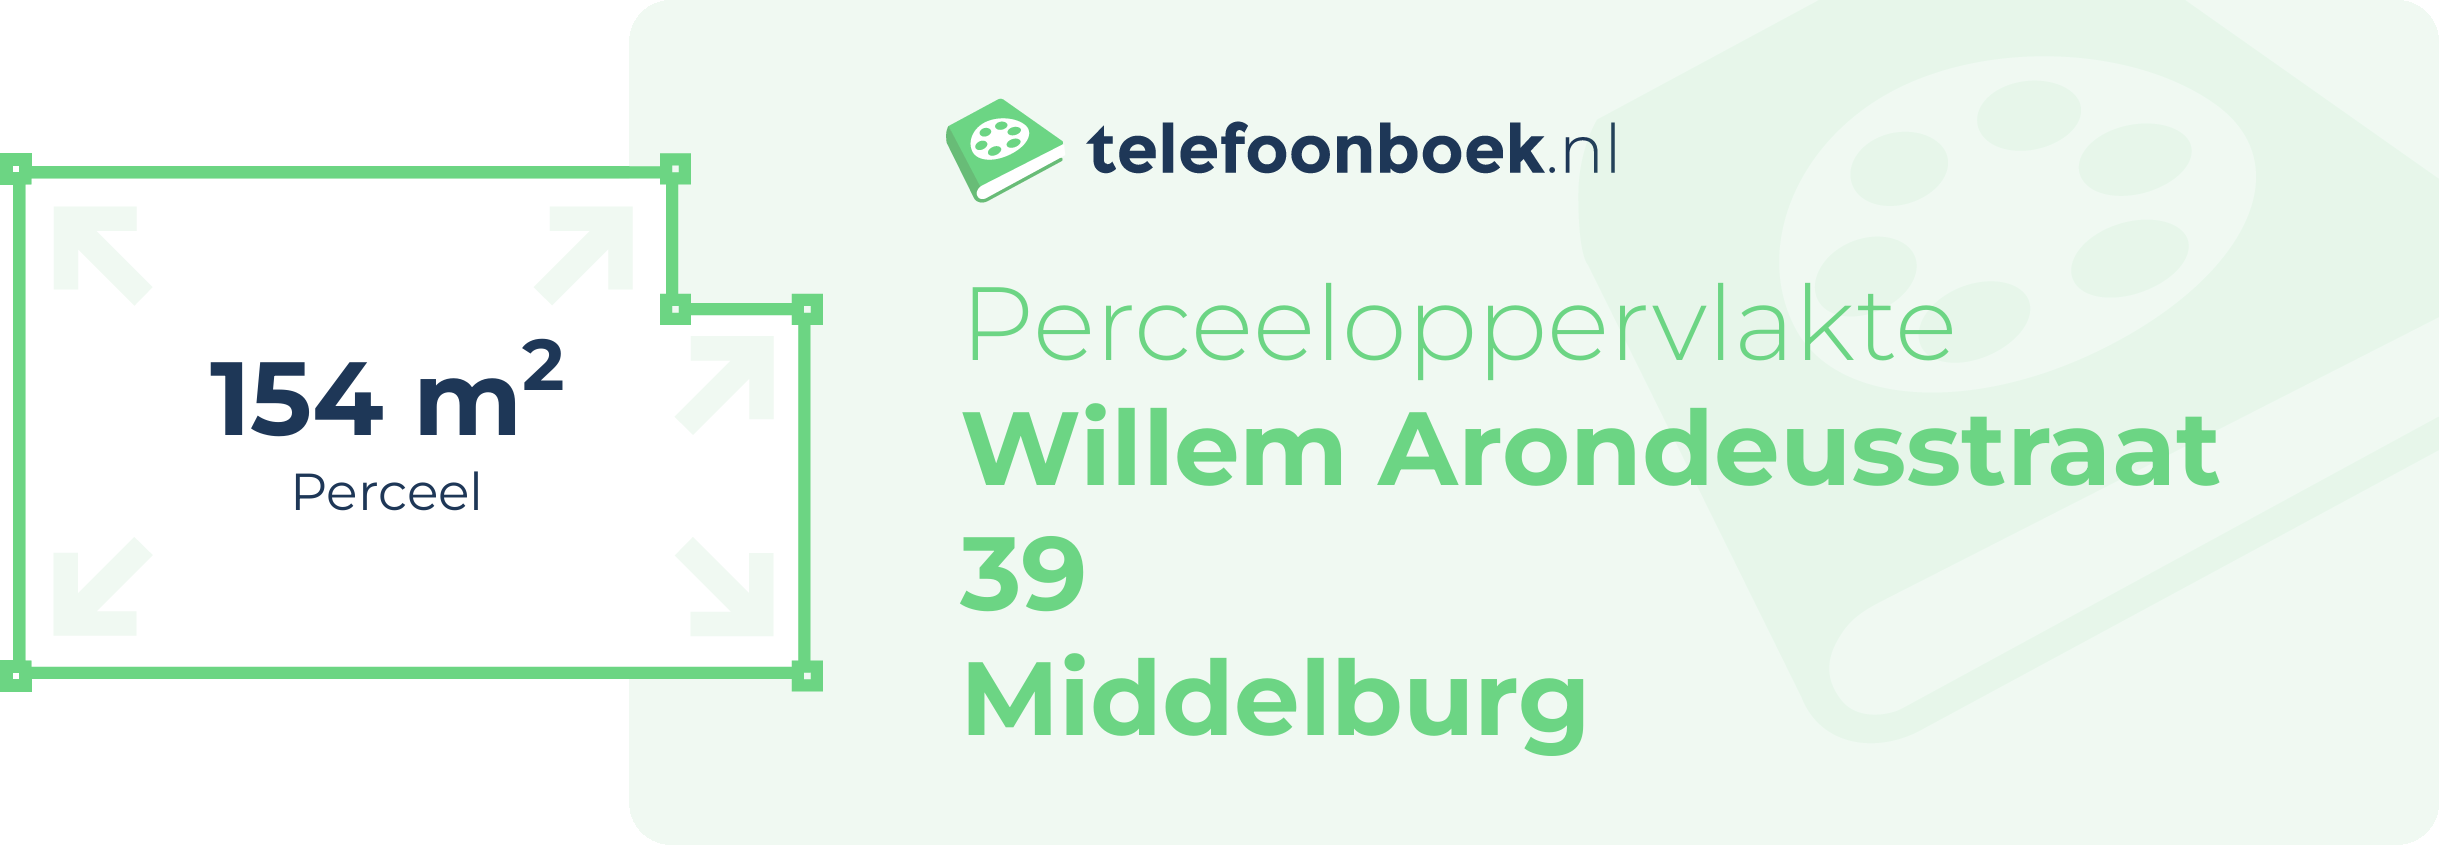 Perceeloppervlakte Willem Arondeusstraat 39 Middelburg